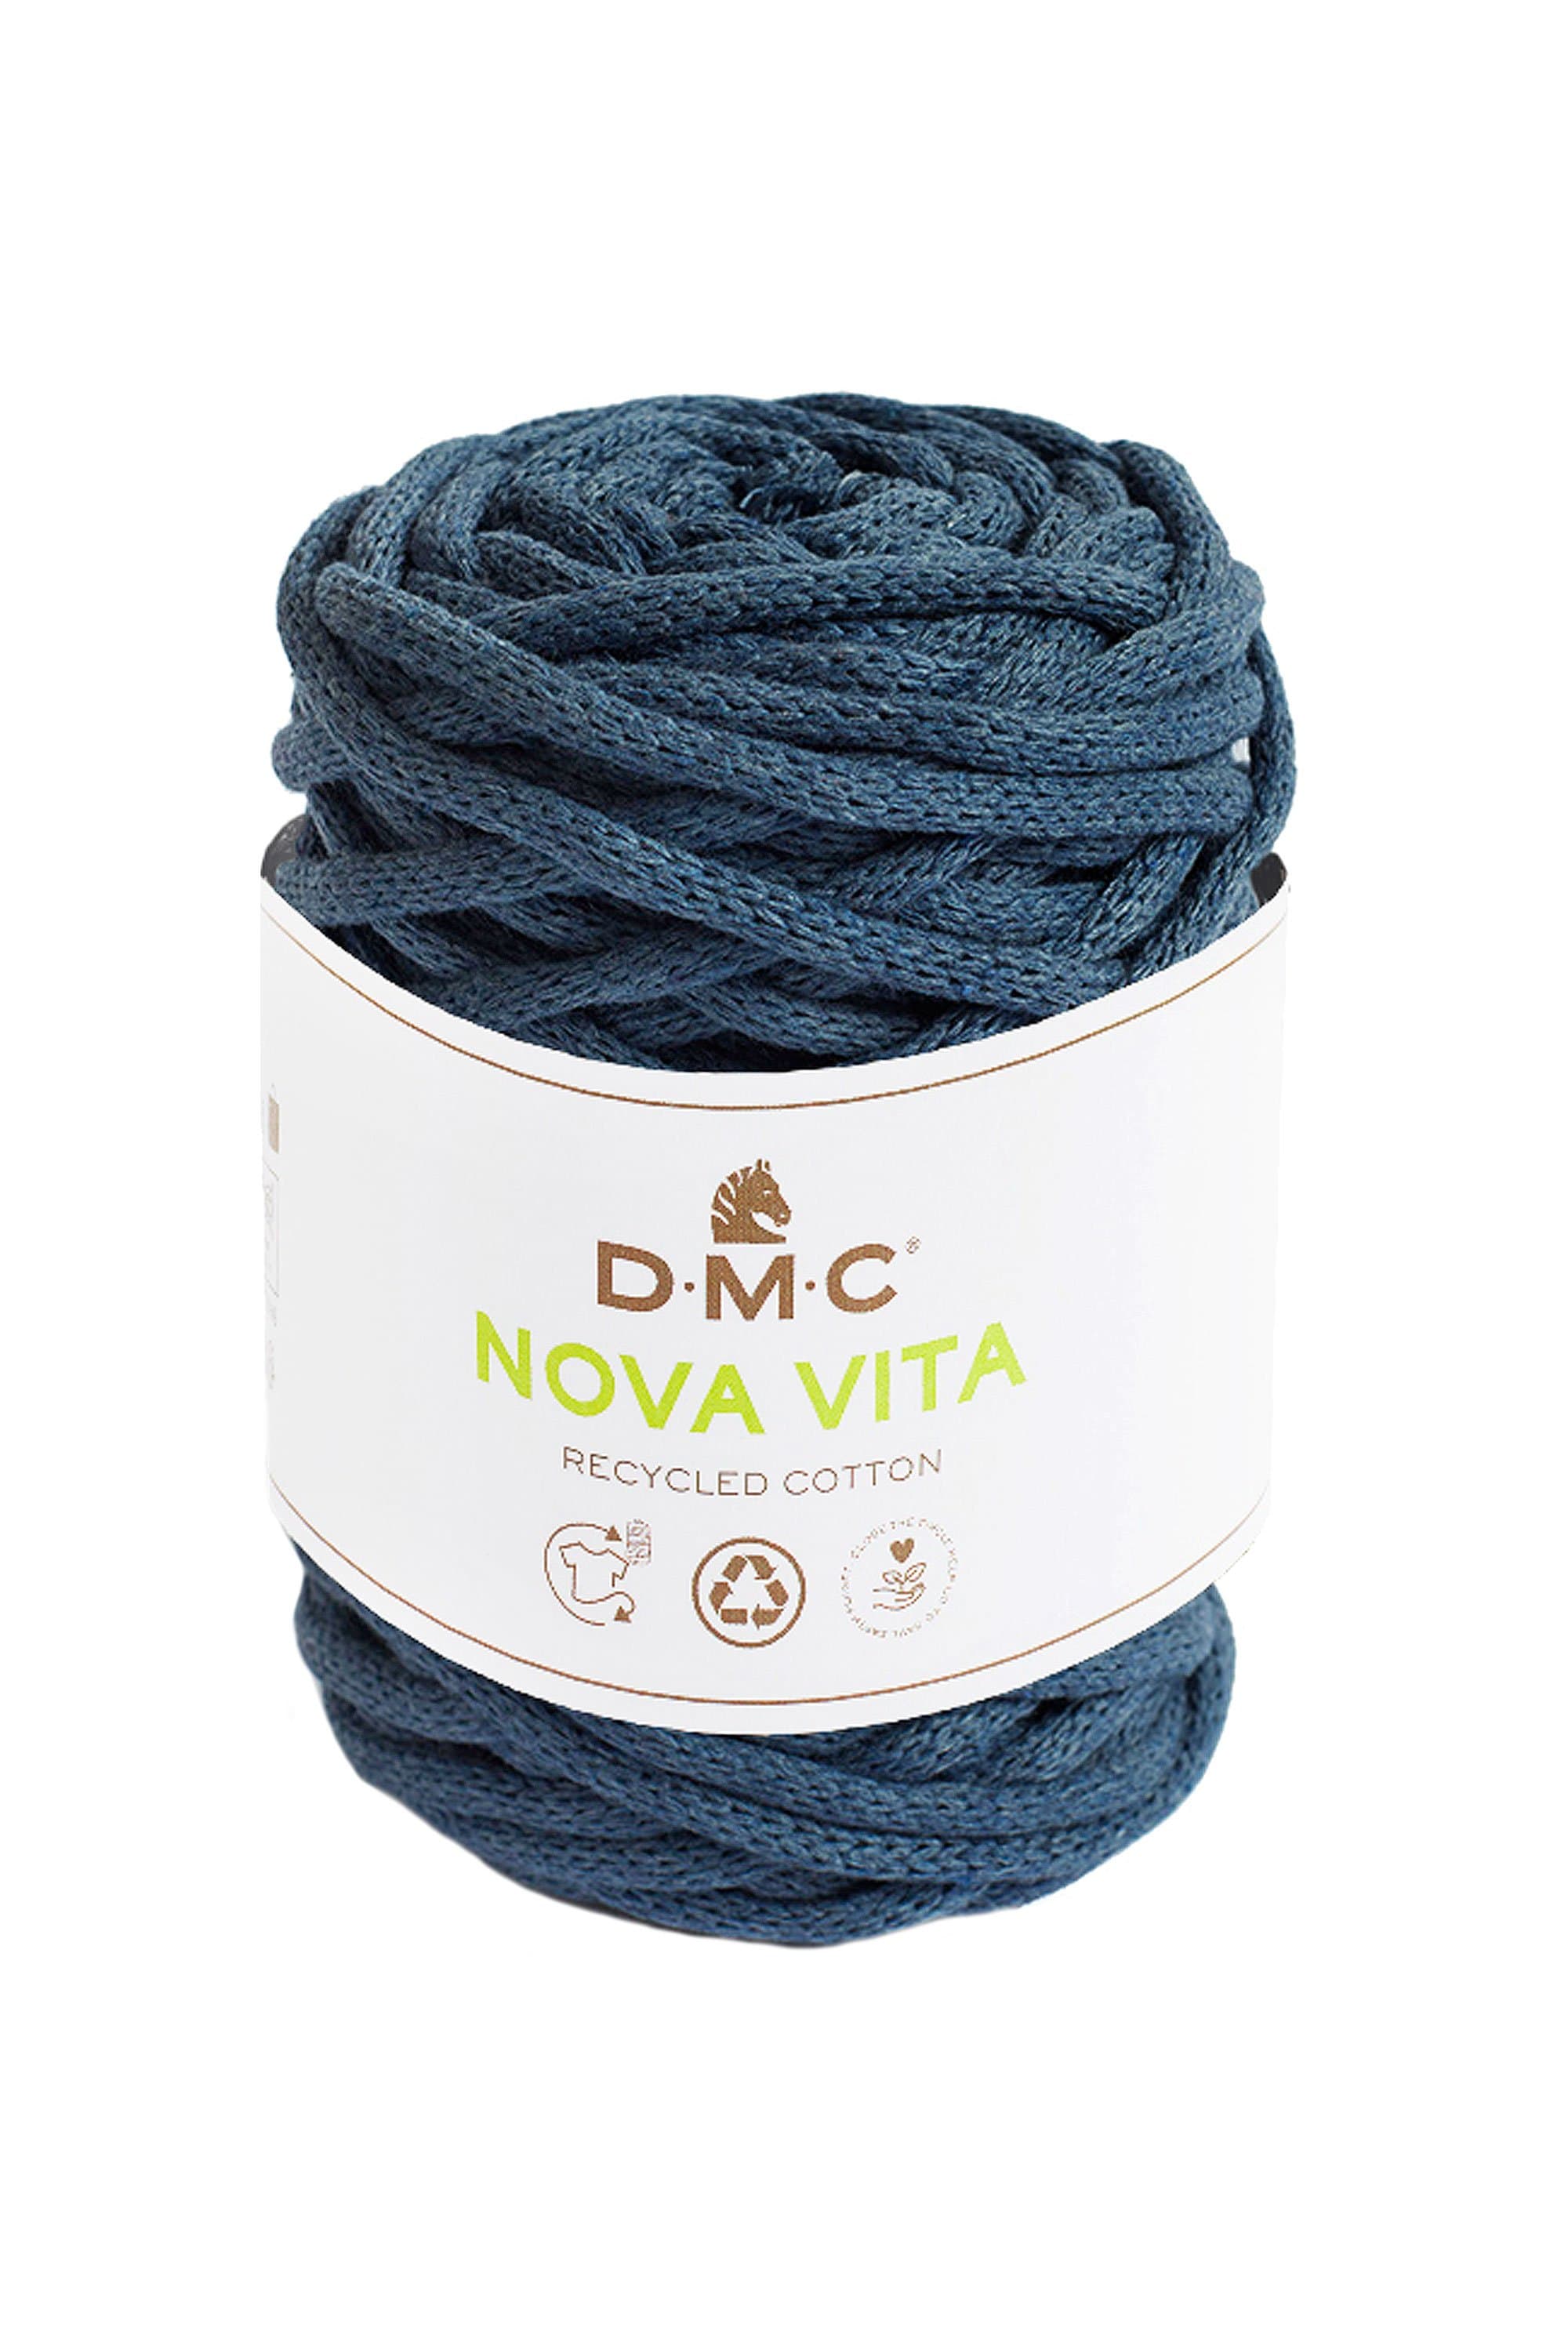 DMC Yarn 76 DMC Nova Vita